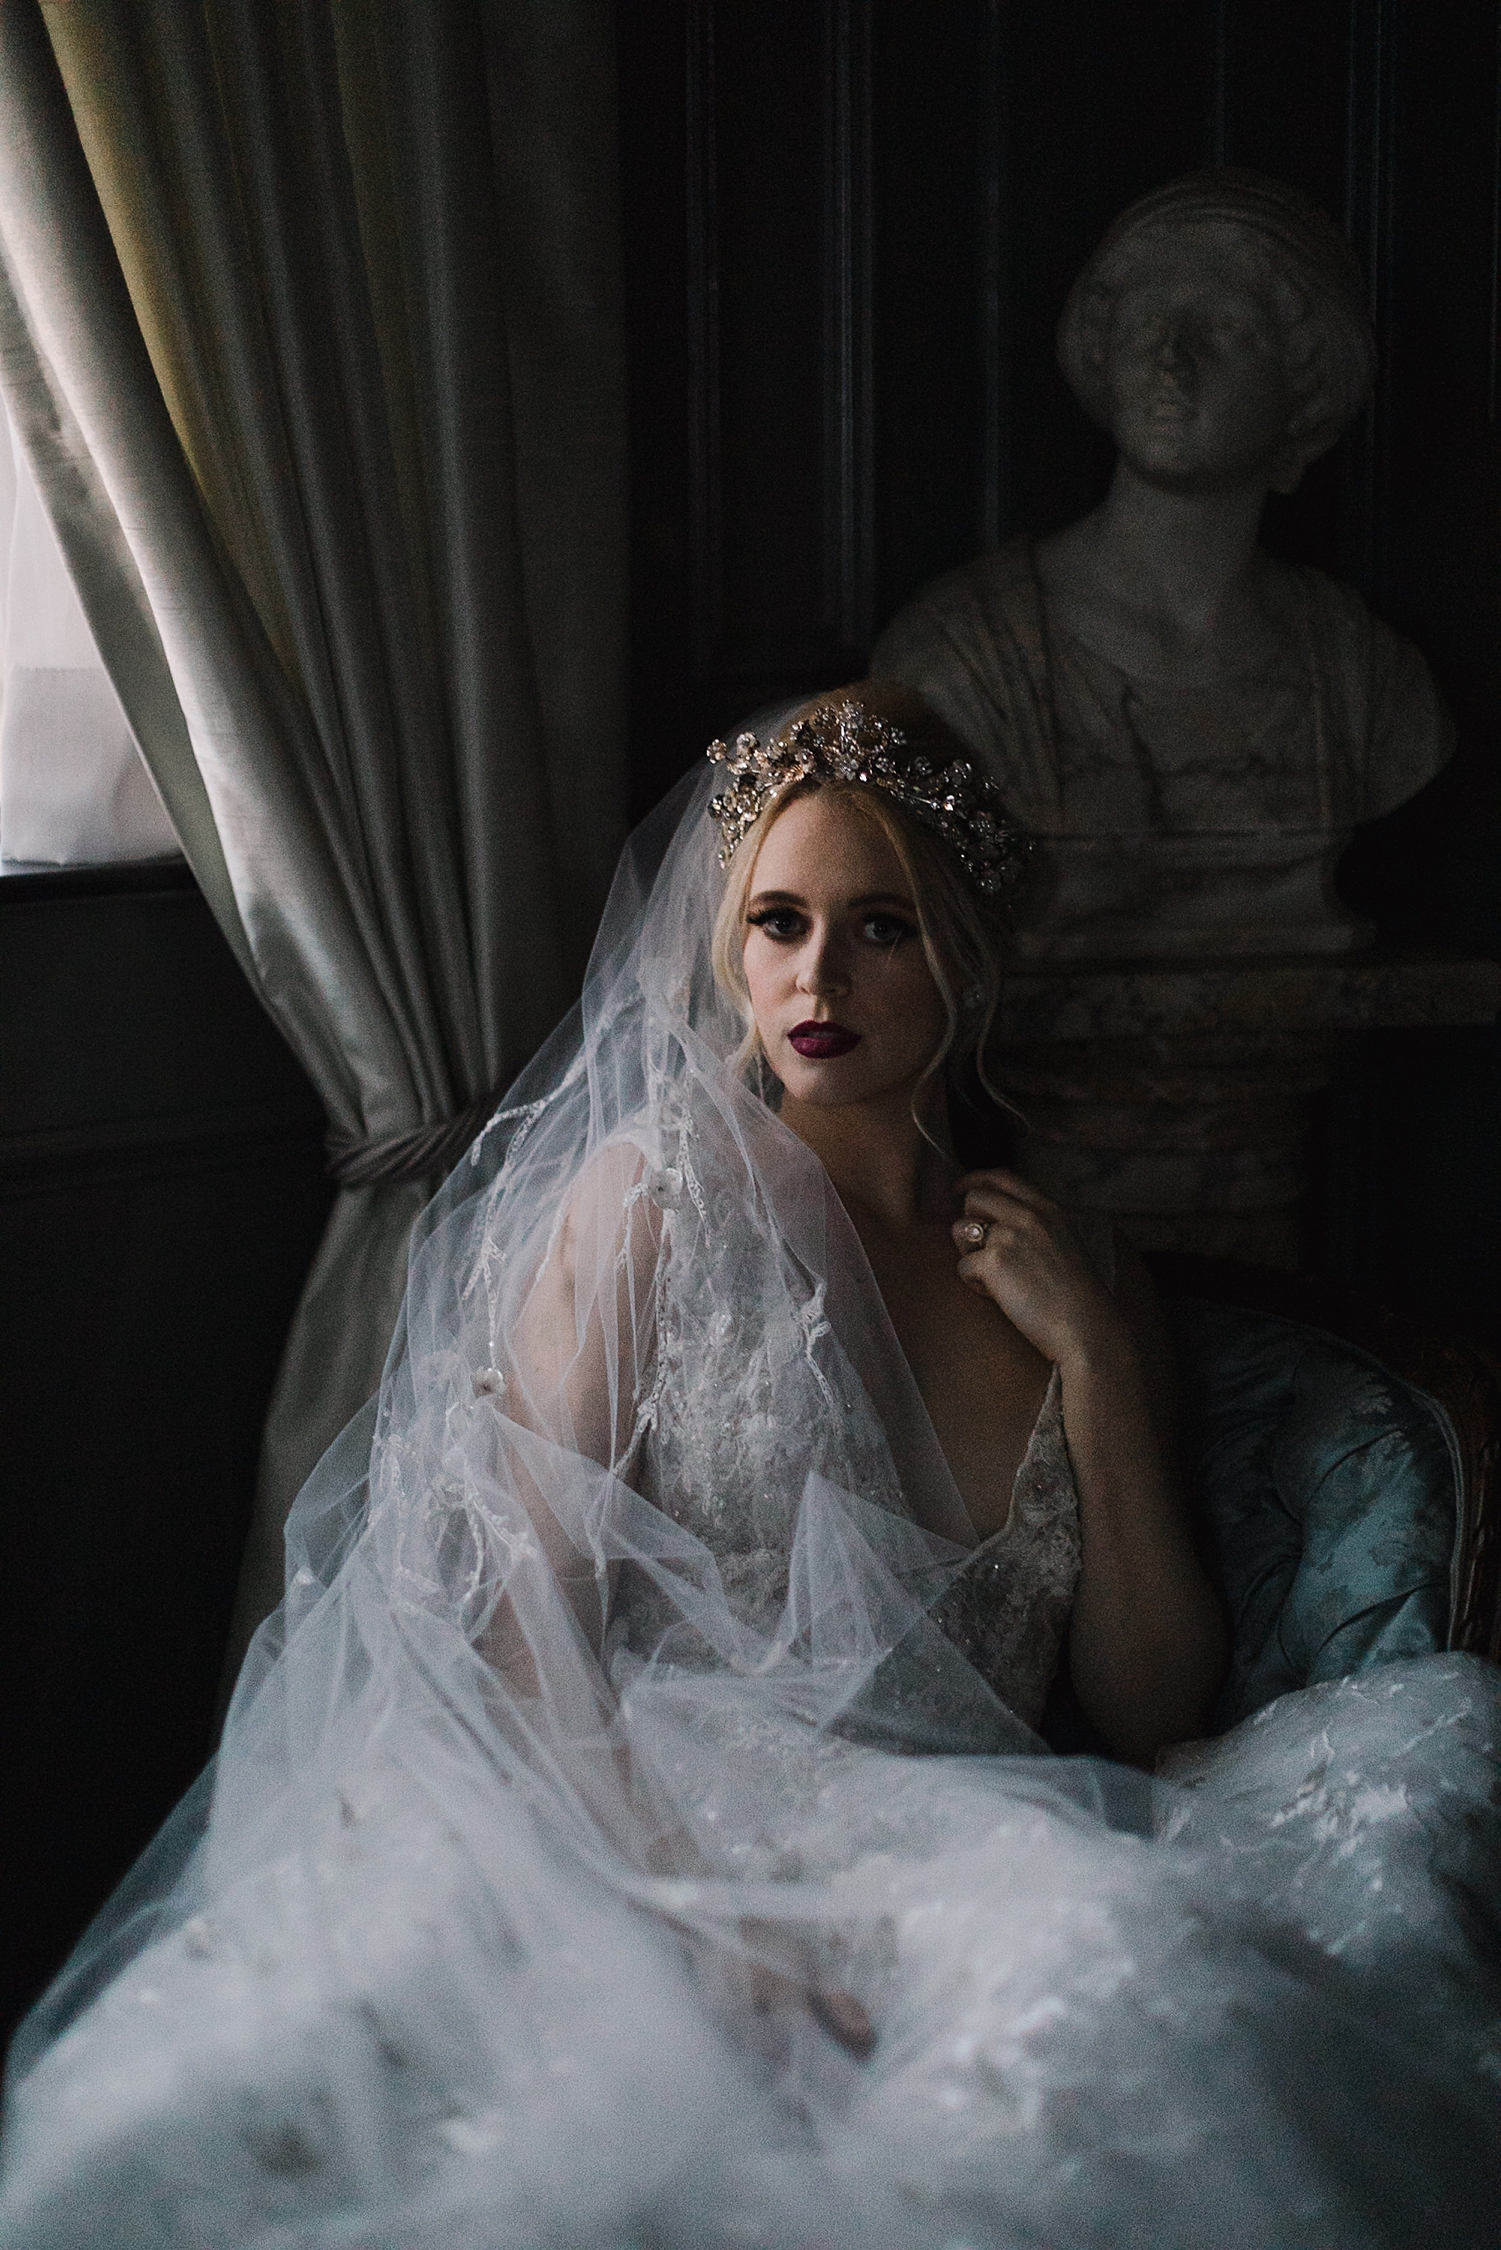 bride in wedding dress, tiara, veil laying by window in dark room